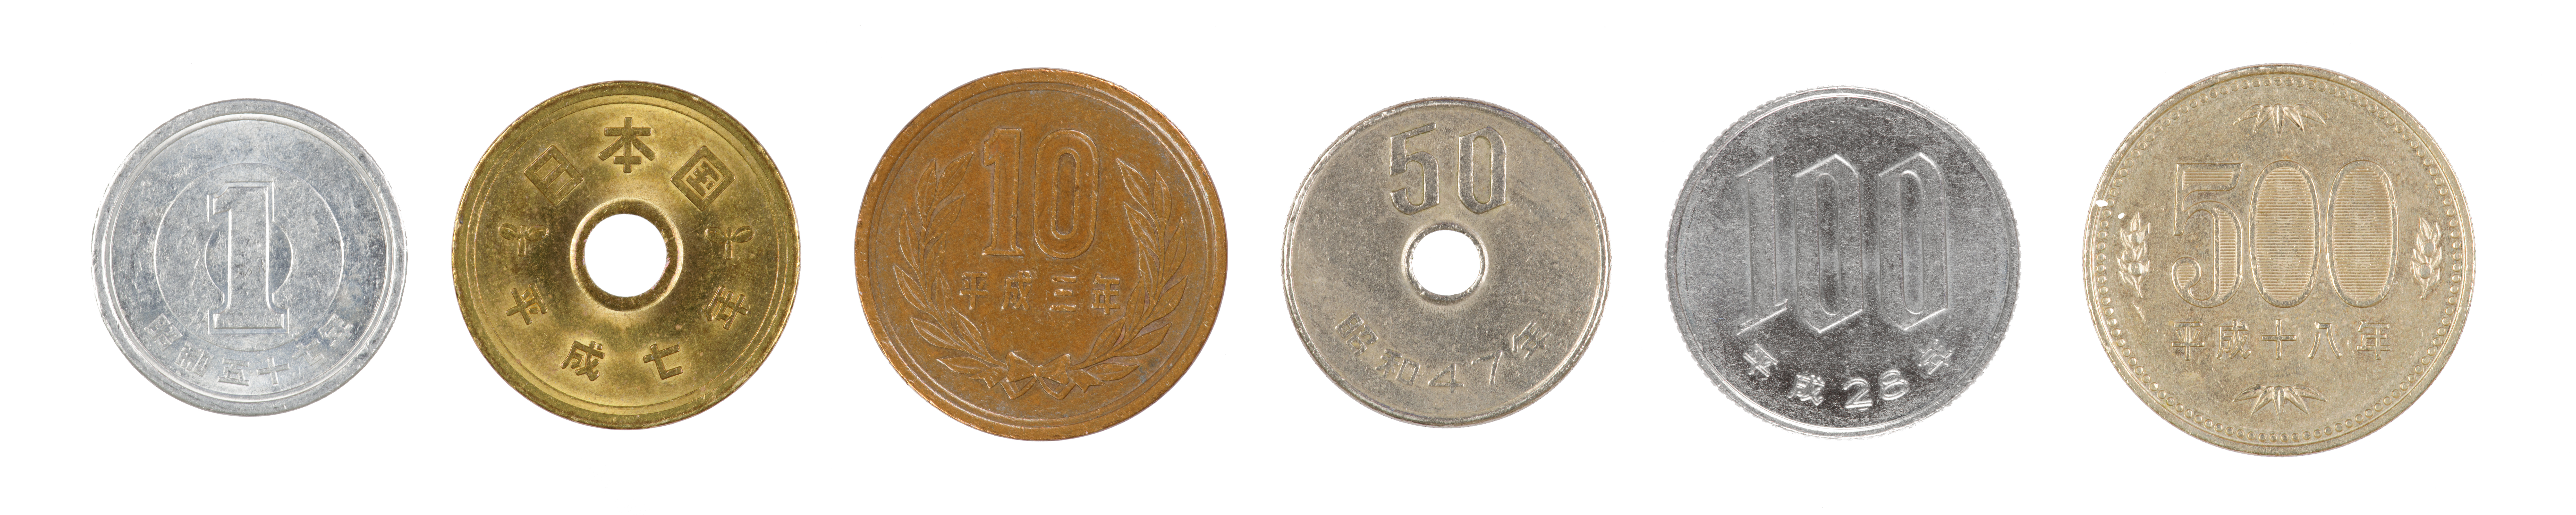 Le monete giapponesi in circolazione sono da 1, 5, 10, 50, 100 e 500 yen. Sono un'importante parte della cultura e dell'economia del paese.